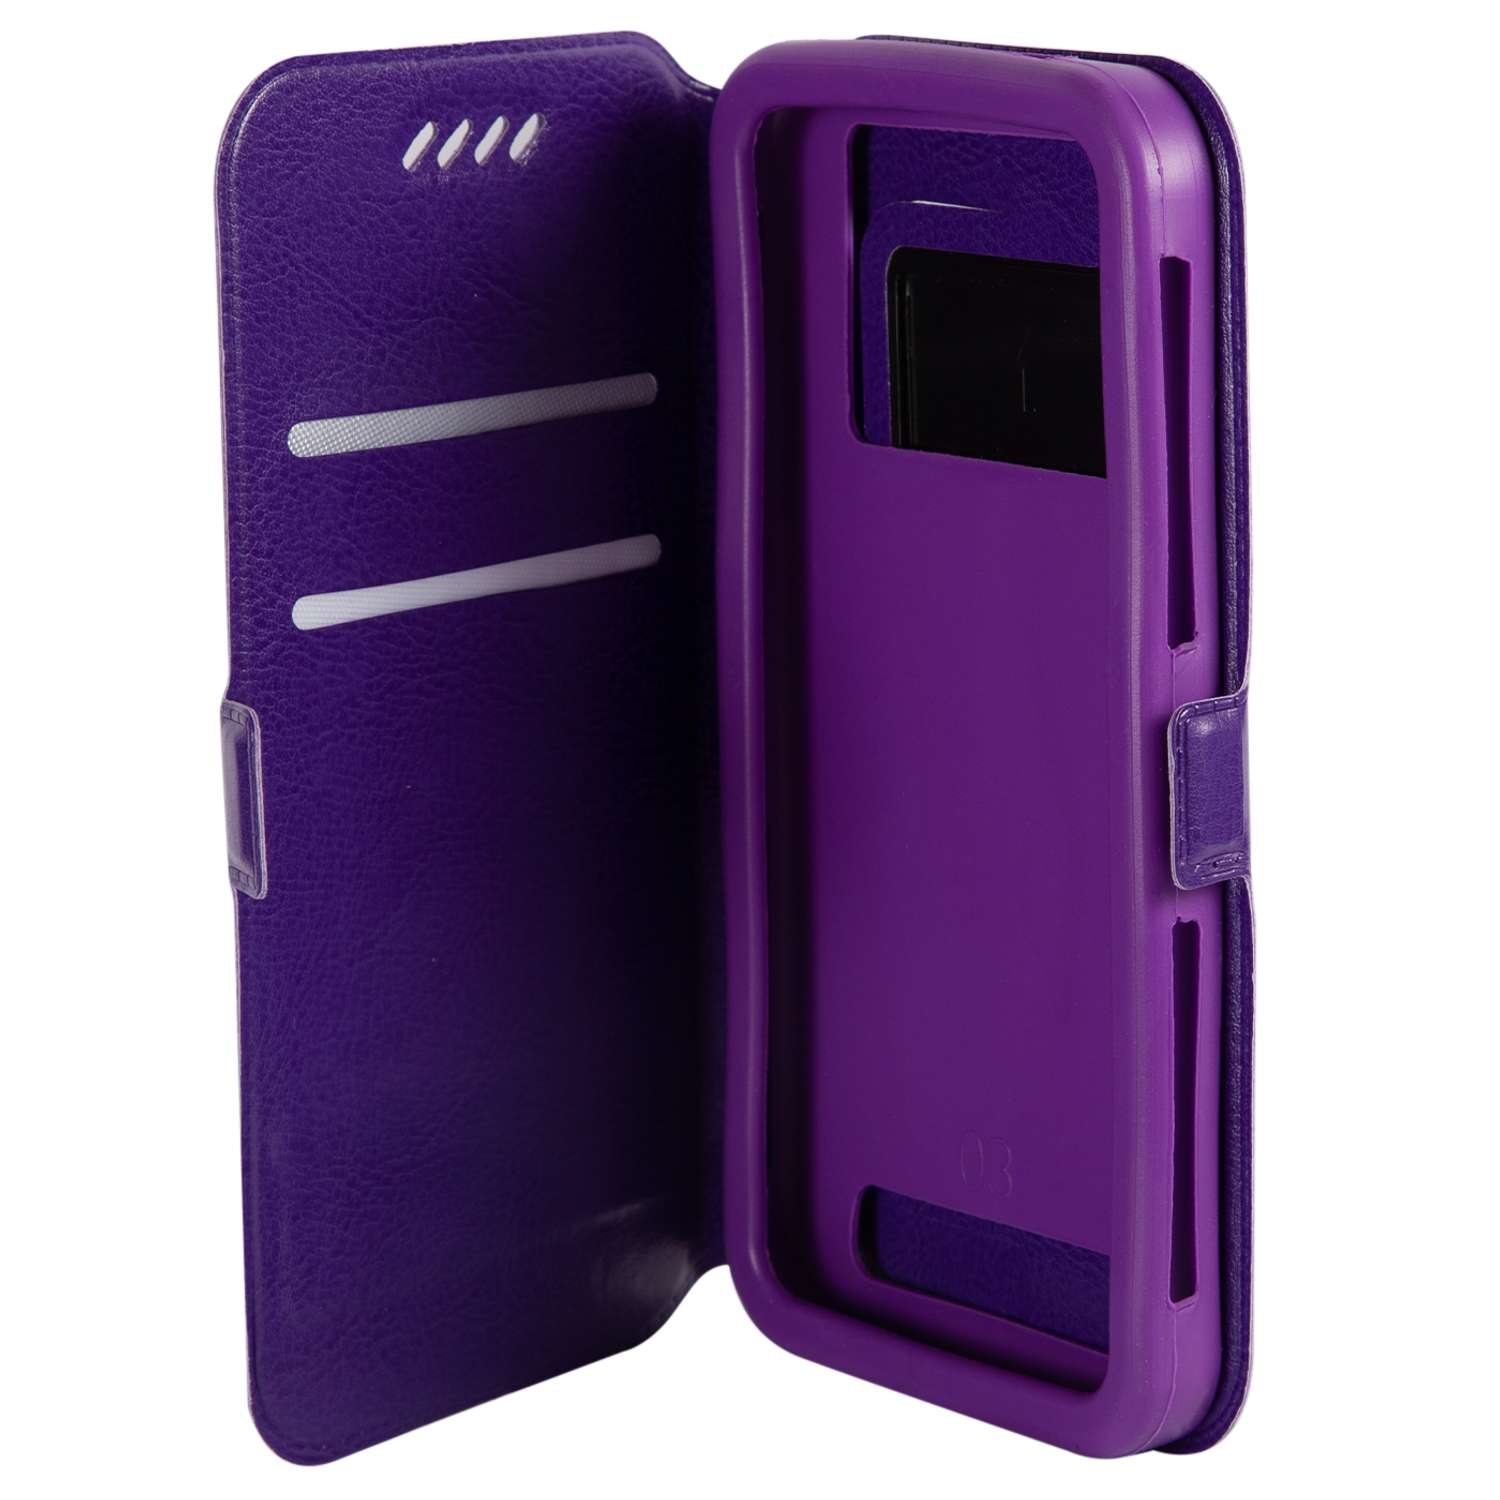 Чехол универсальный iBox Universal Slide для телефонов 4.2-5 дюймов фиолетовый - фото 2